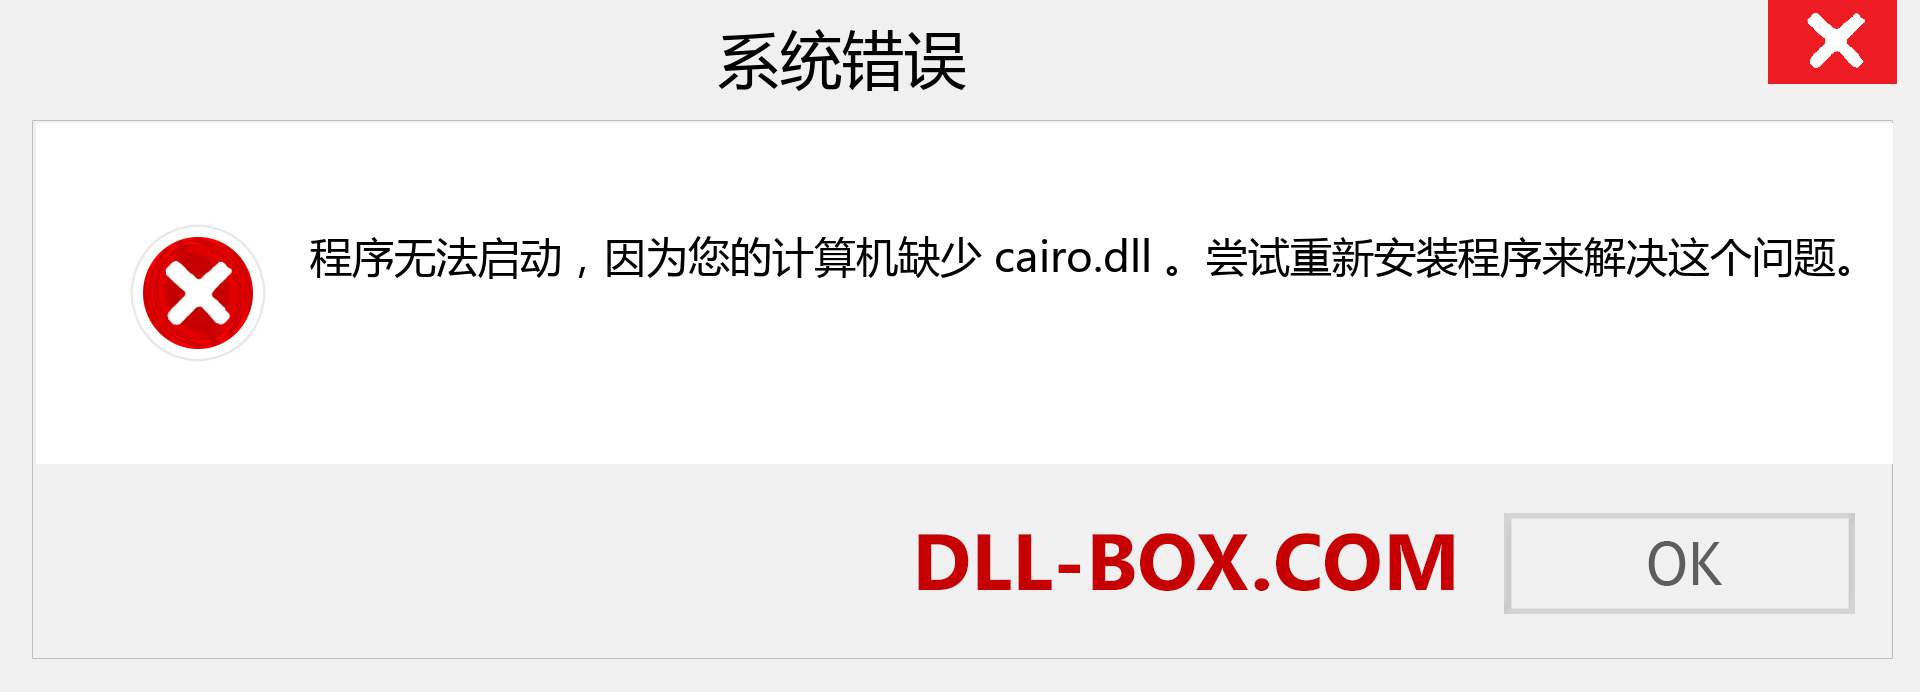 cairo.dll 文件丢失？。 适用于 Windows 7、8、10 的下载 - 修复 Windows、照片、图像上的 cairo dll 丢失错误